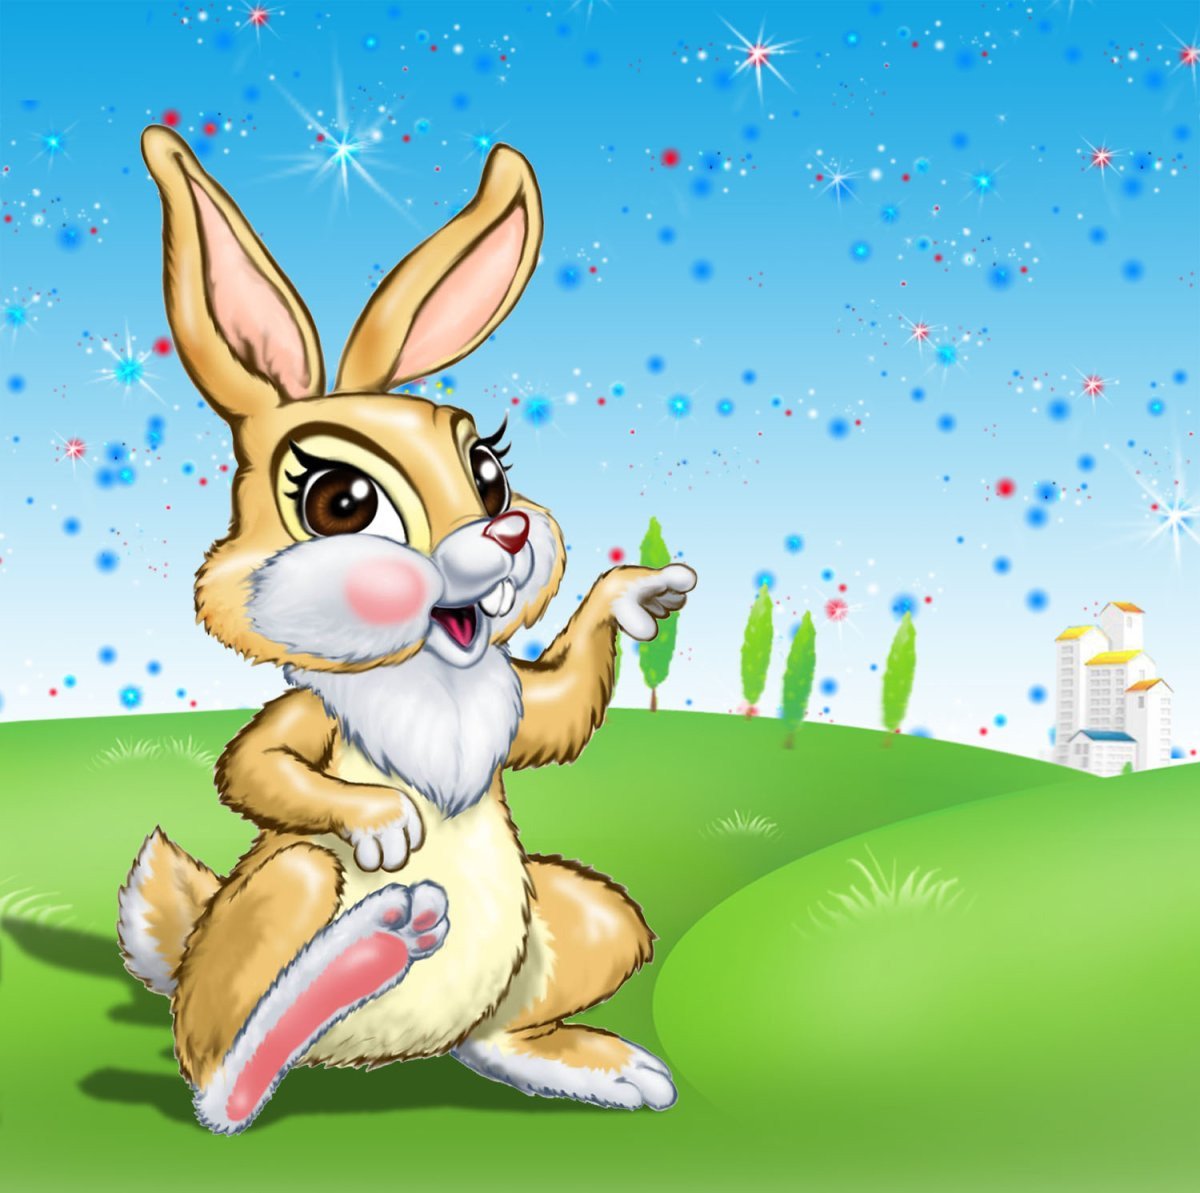 Фото зайца для детей рисунок